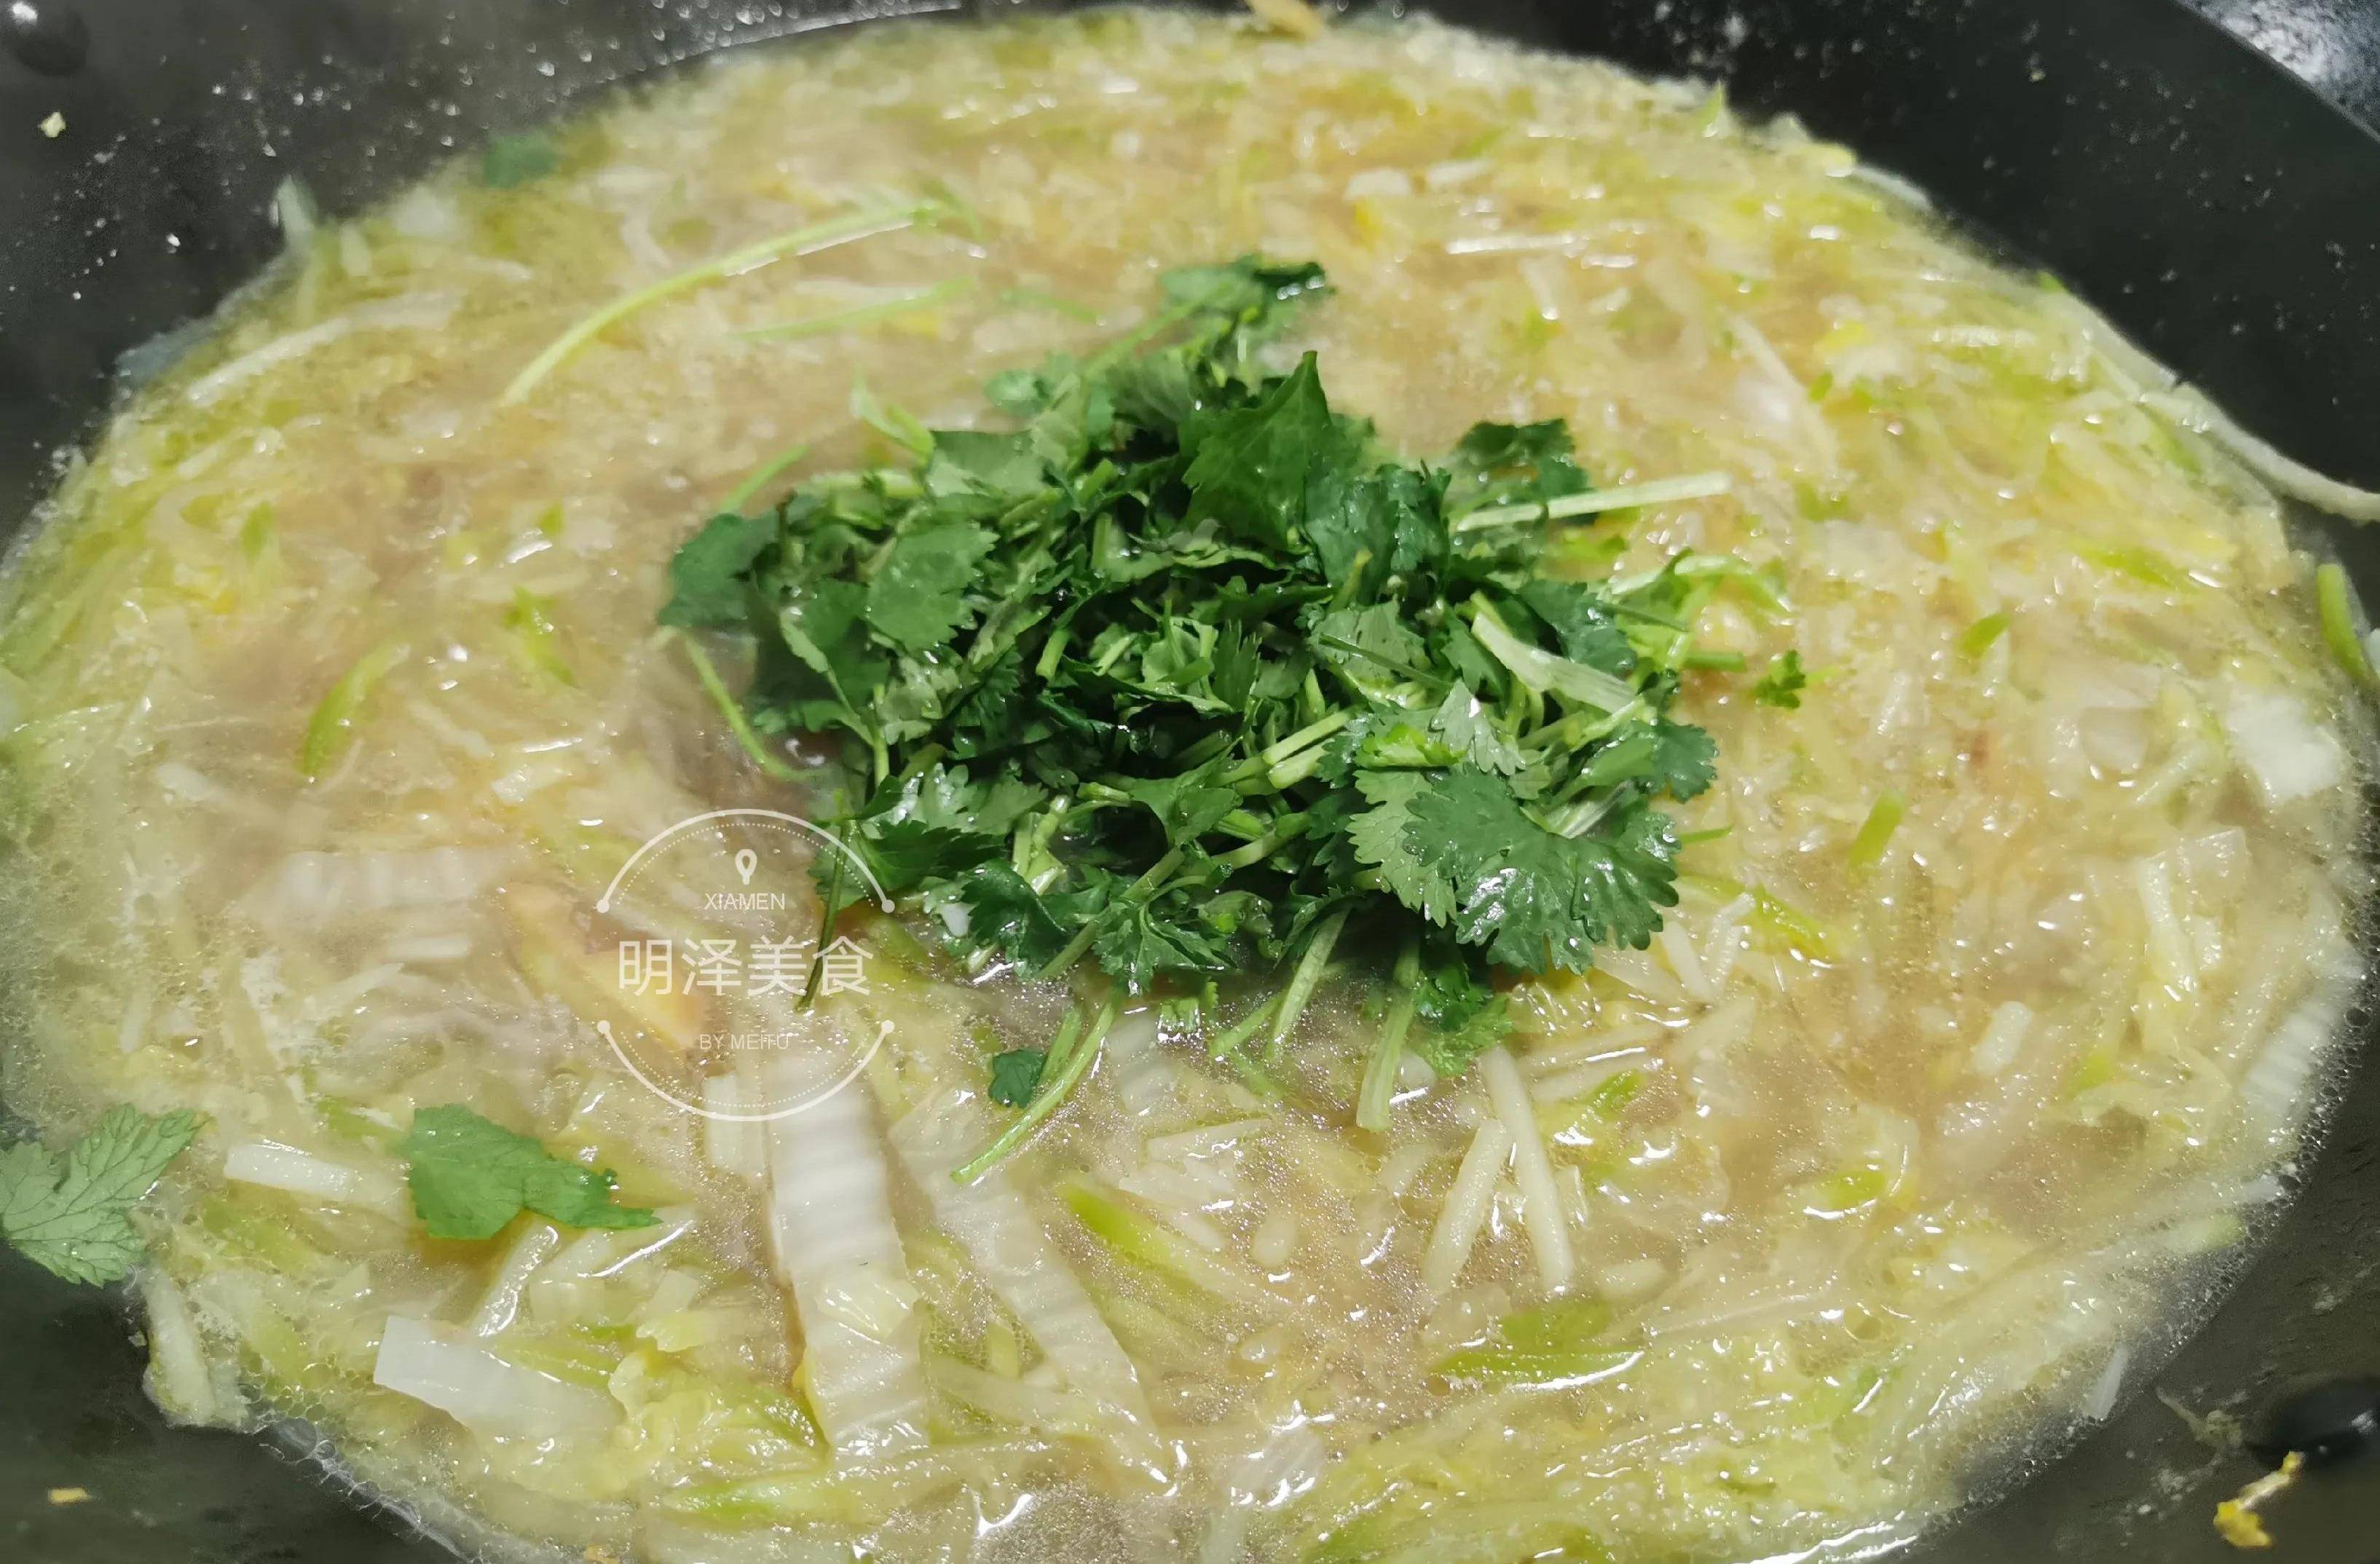 家人喜欢喝的萝卜土豆白菜汤,做法简单味道好,适合冬天喝